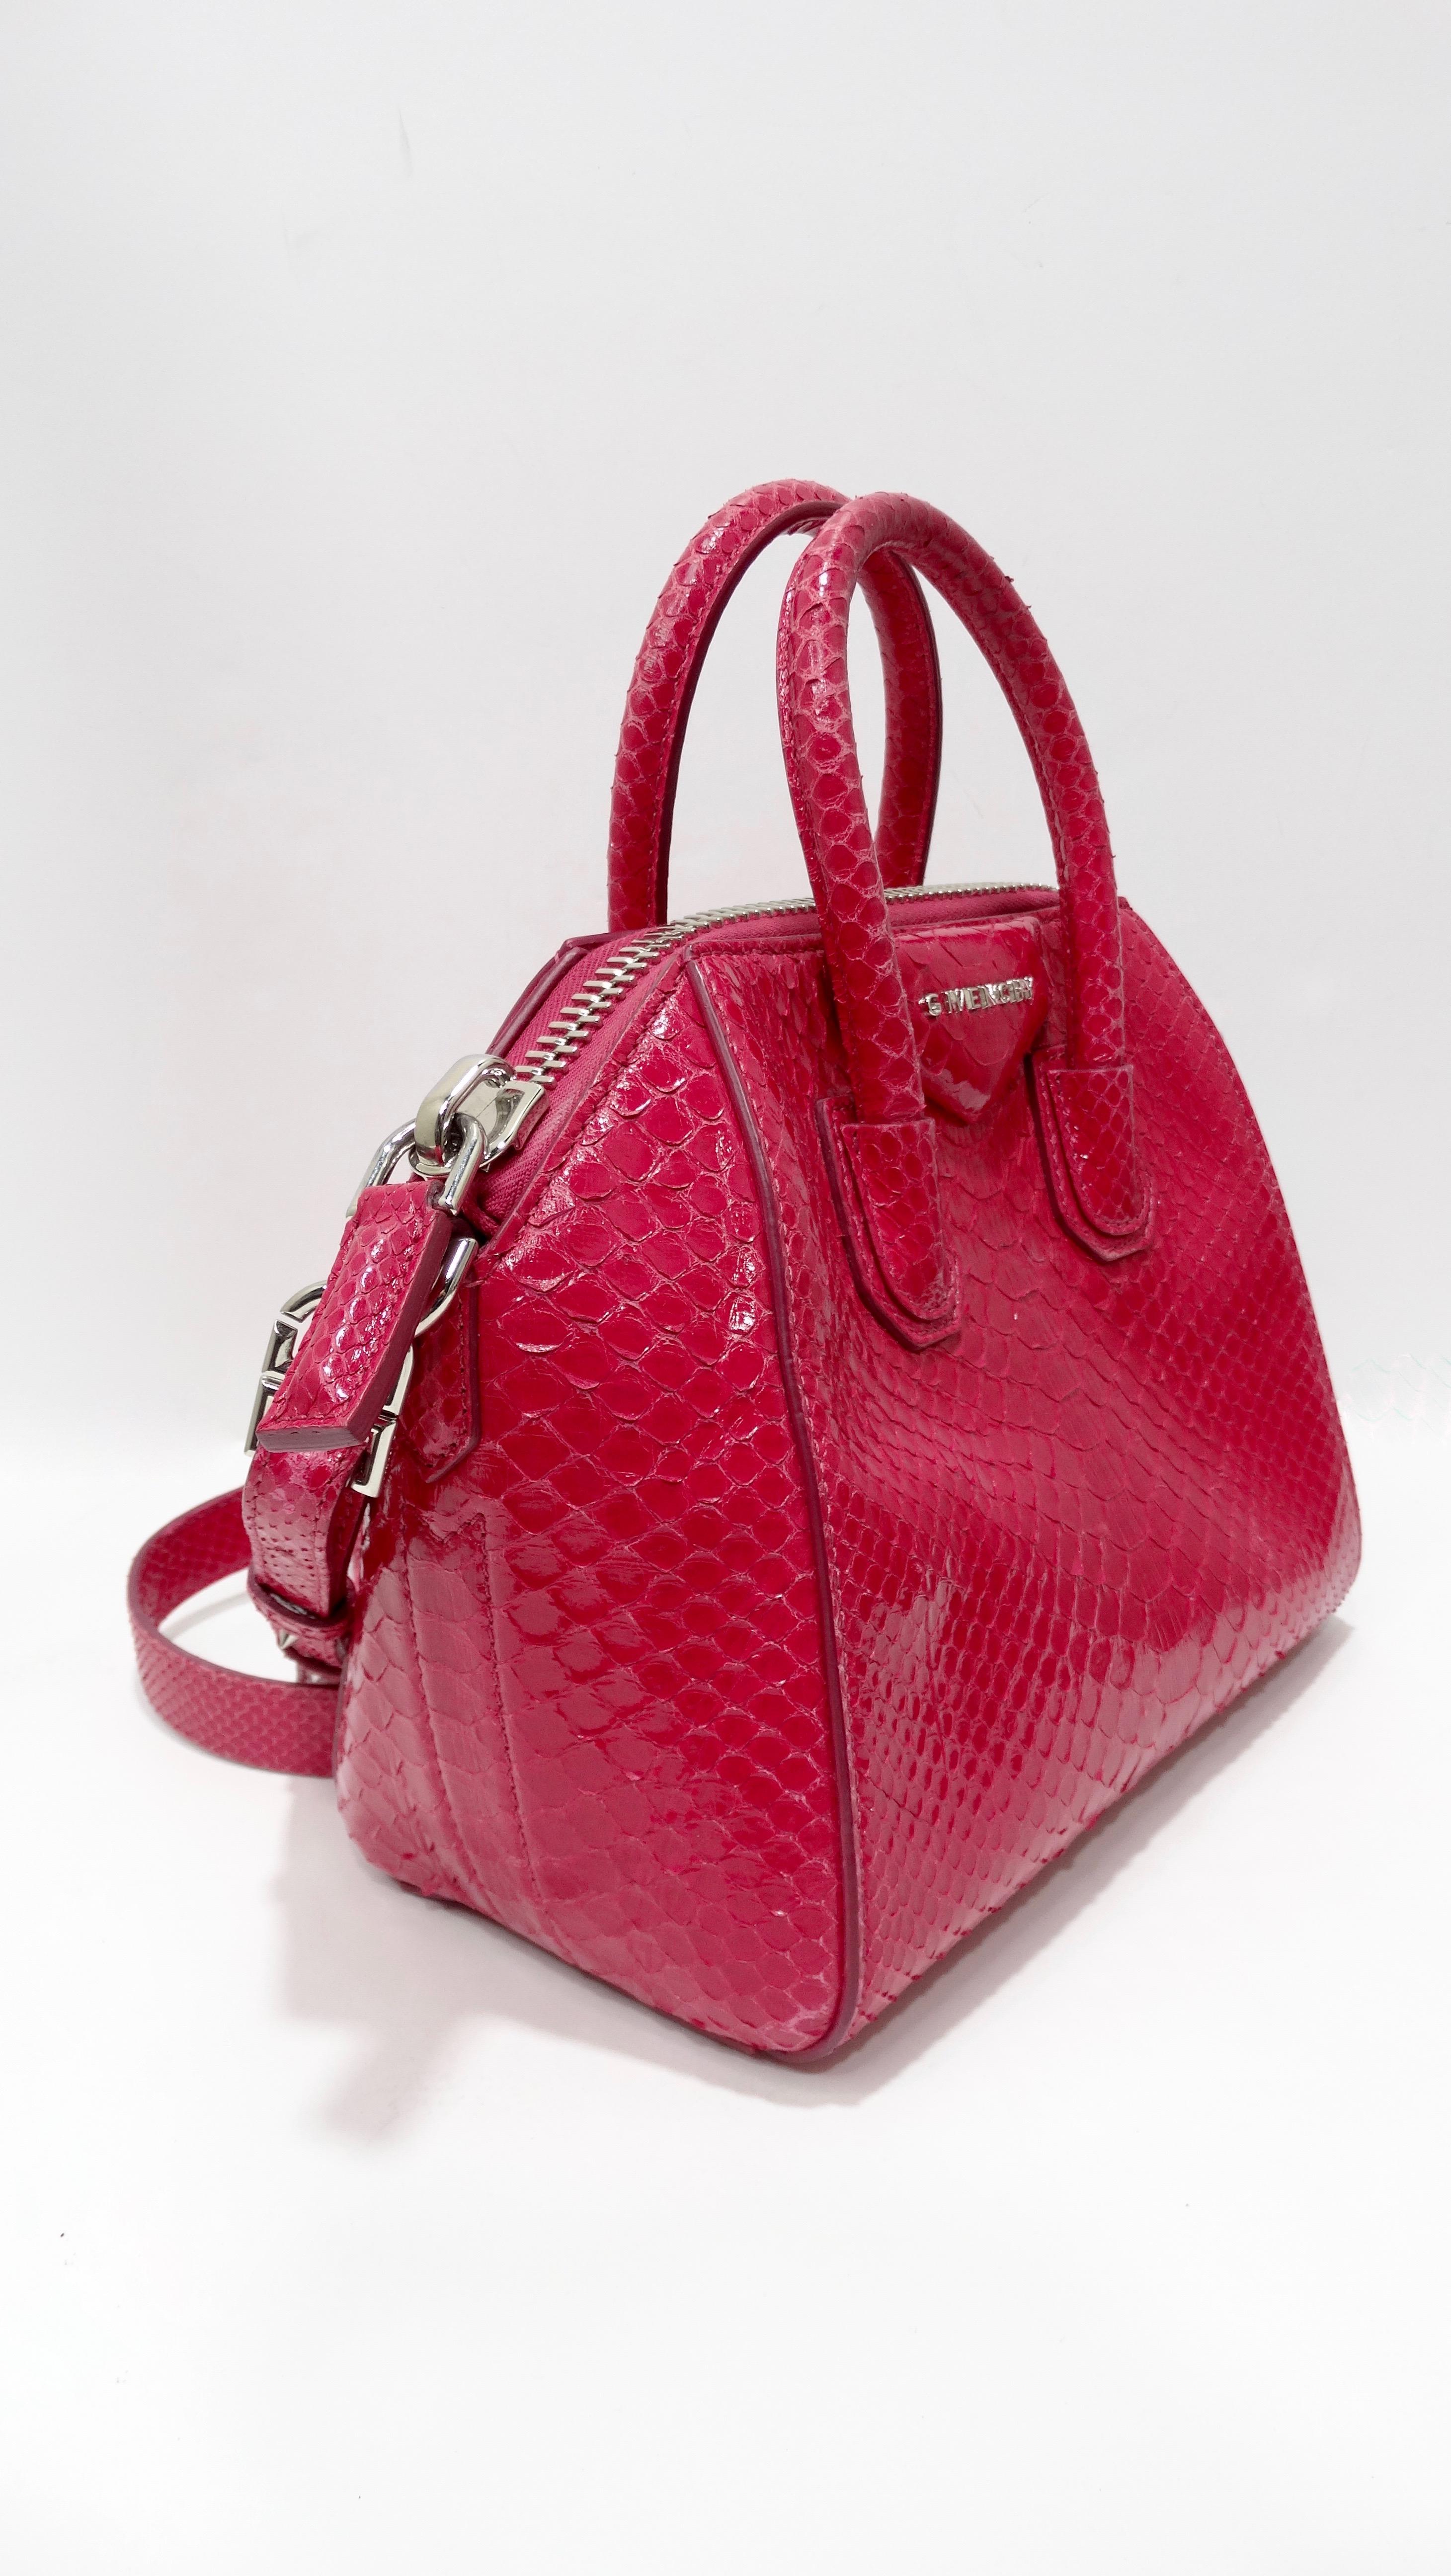 Ajoutez de la couleur à vos looks avec ce superbe sac Givenchy Antigona ! Circa 2011, ce sac rare est magnifiquement confectionné en python laminé et fini en rose vif. Il est doté de côtés structurés, de deux poignées supérieures enroulées, d'une